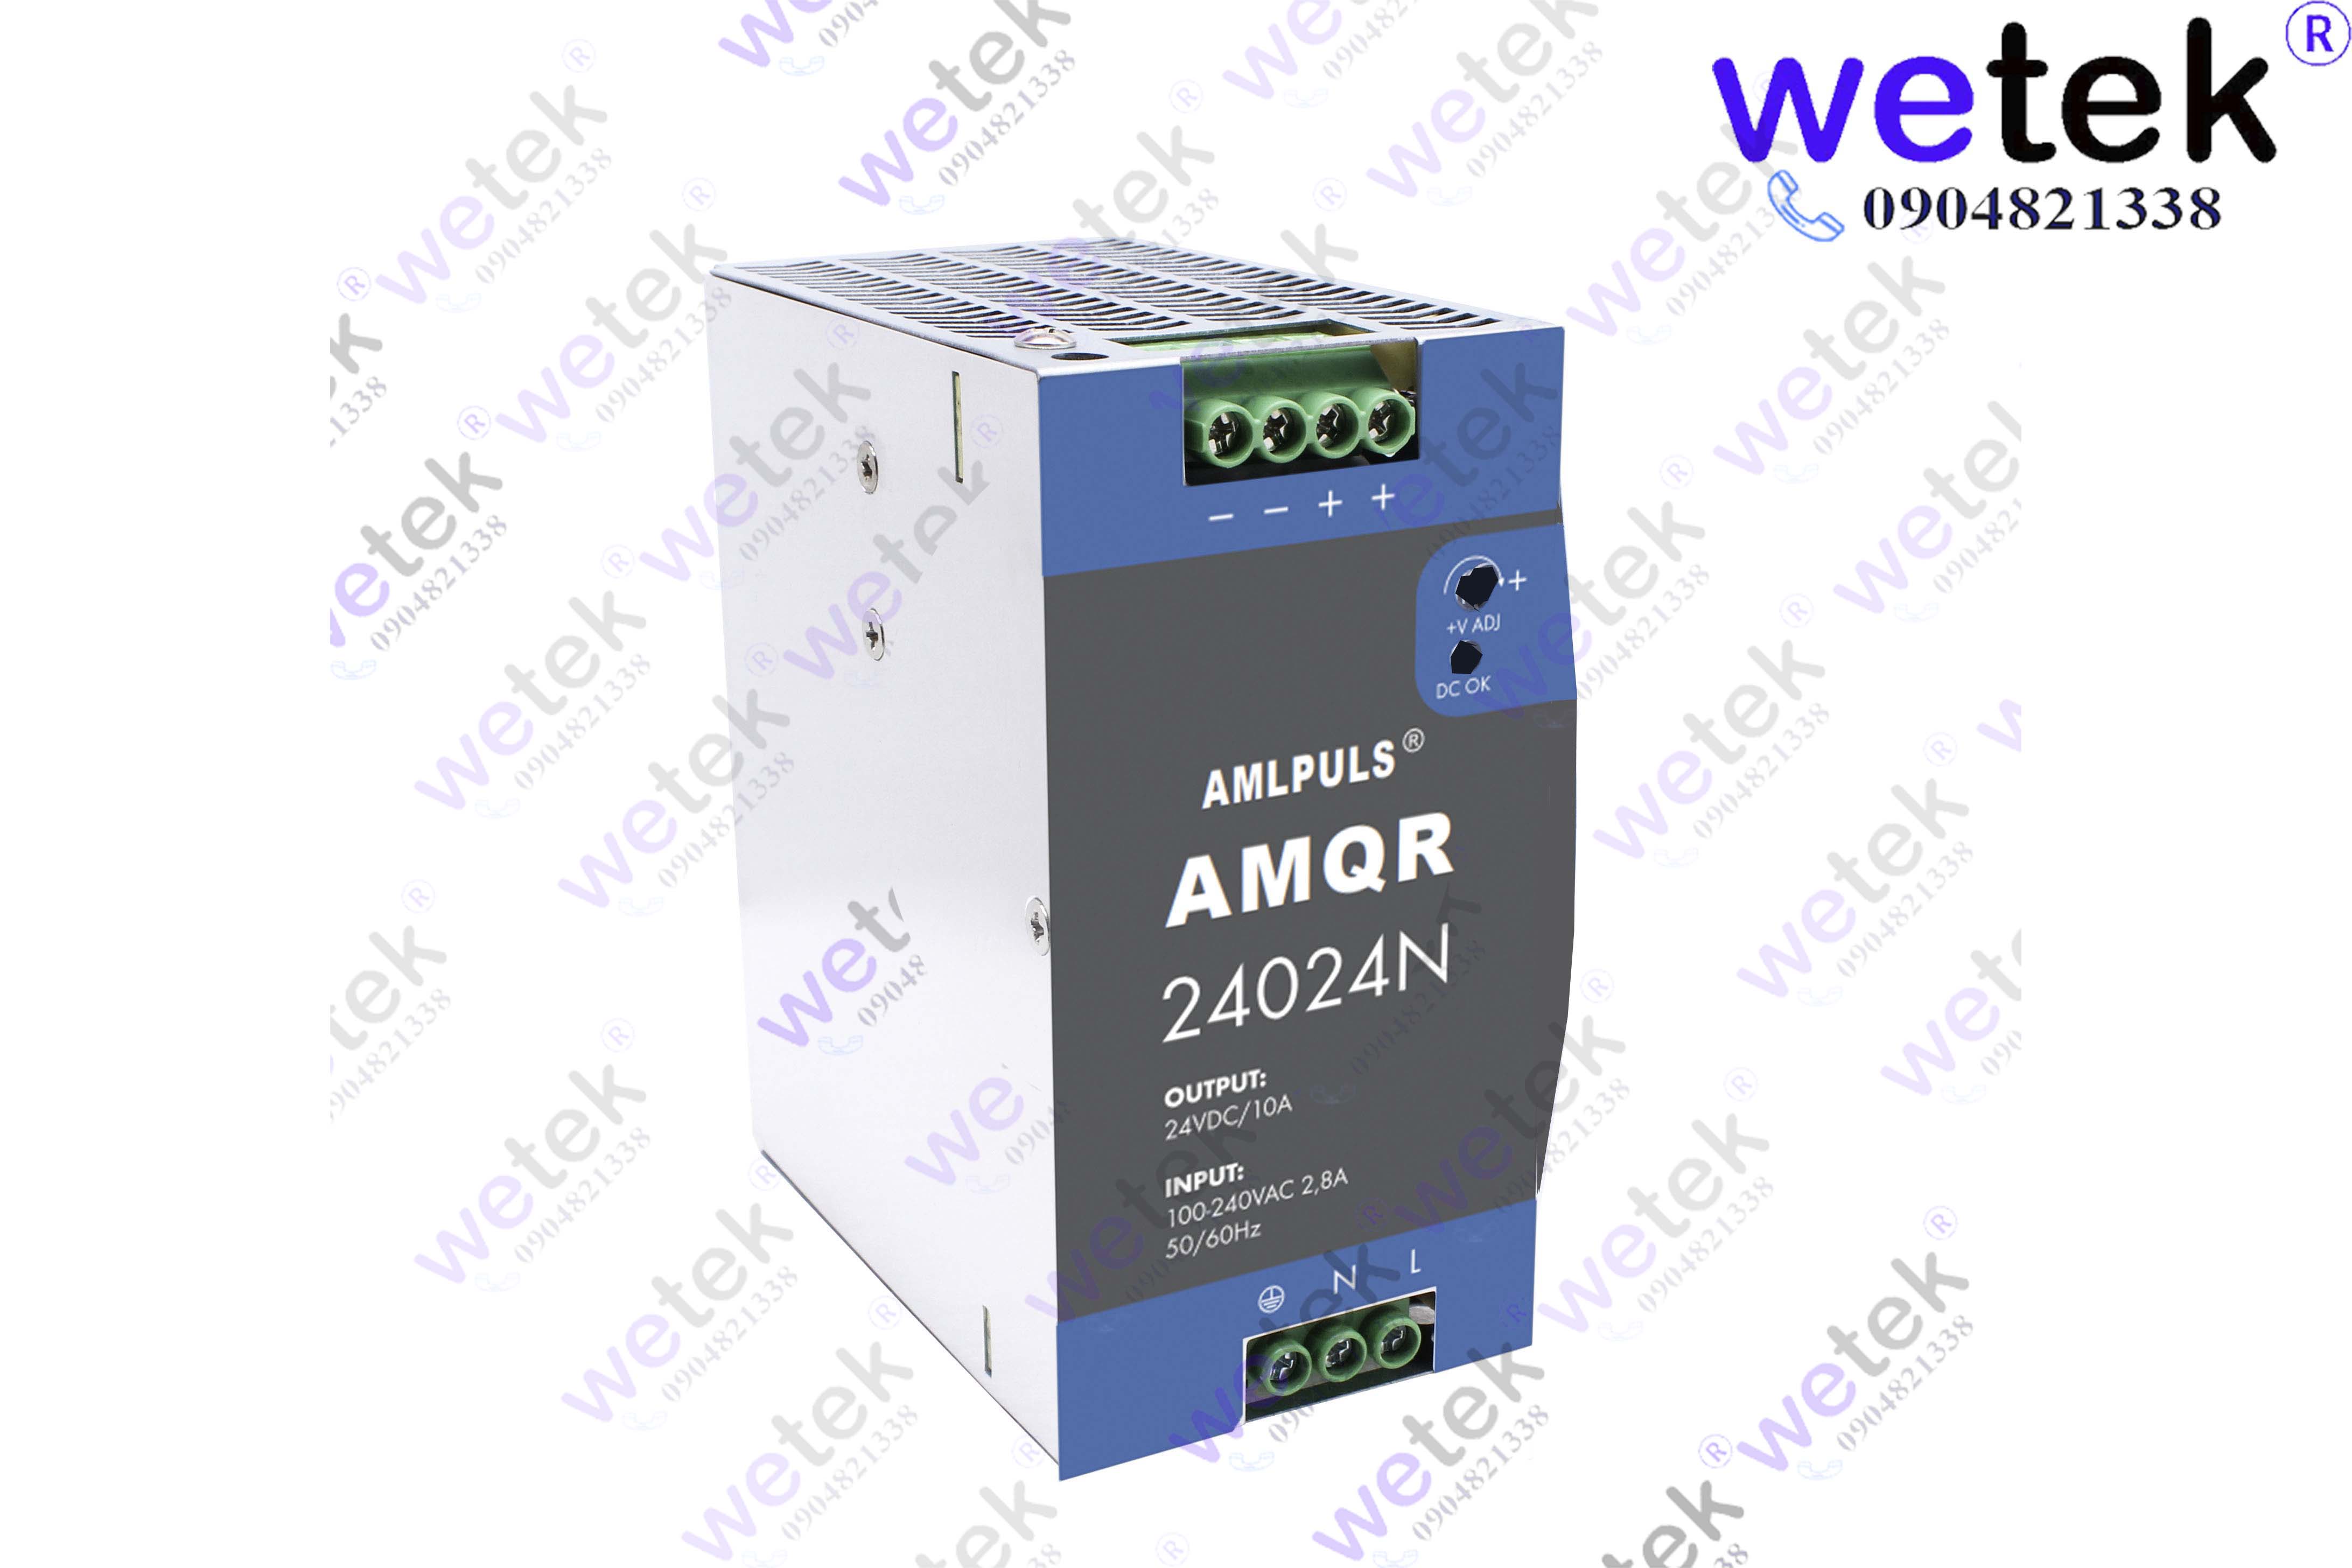 Nguồn xung cài thanh DIN AMQR24024N 240W 24Vd thương hiệu AMLPULS